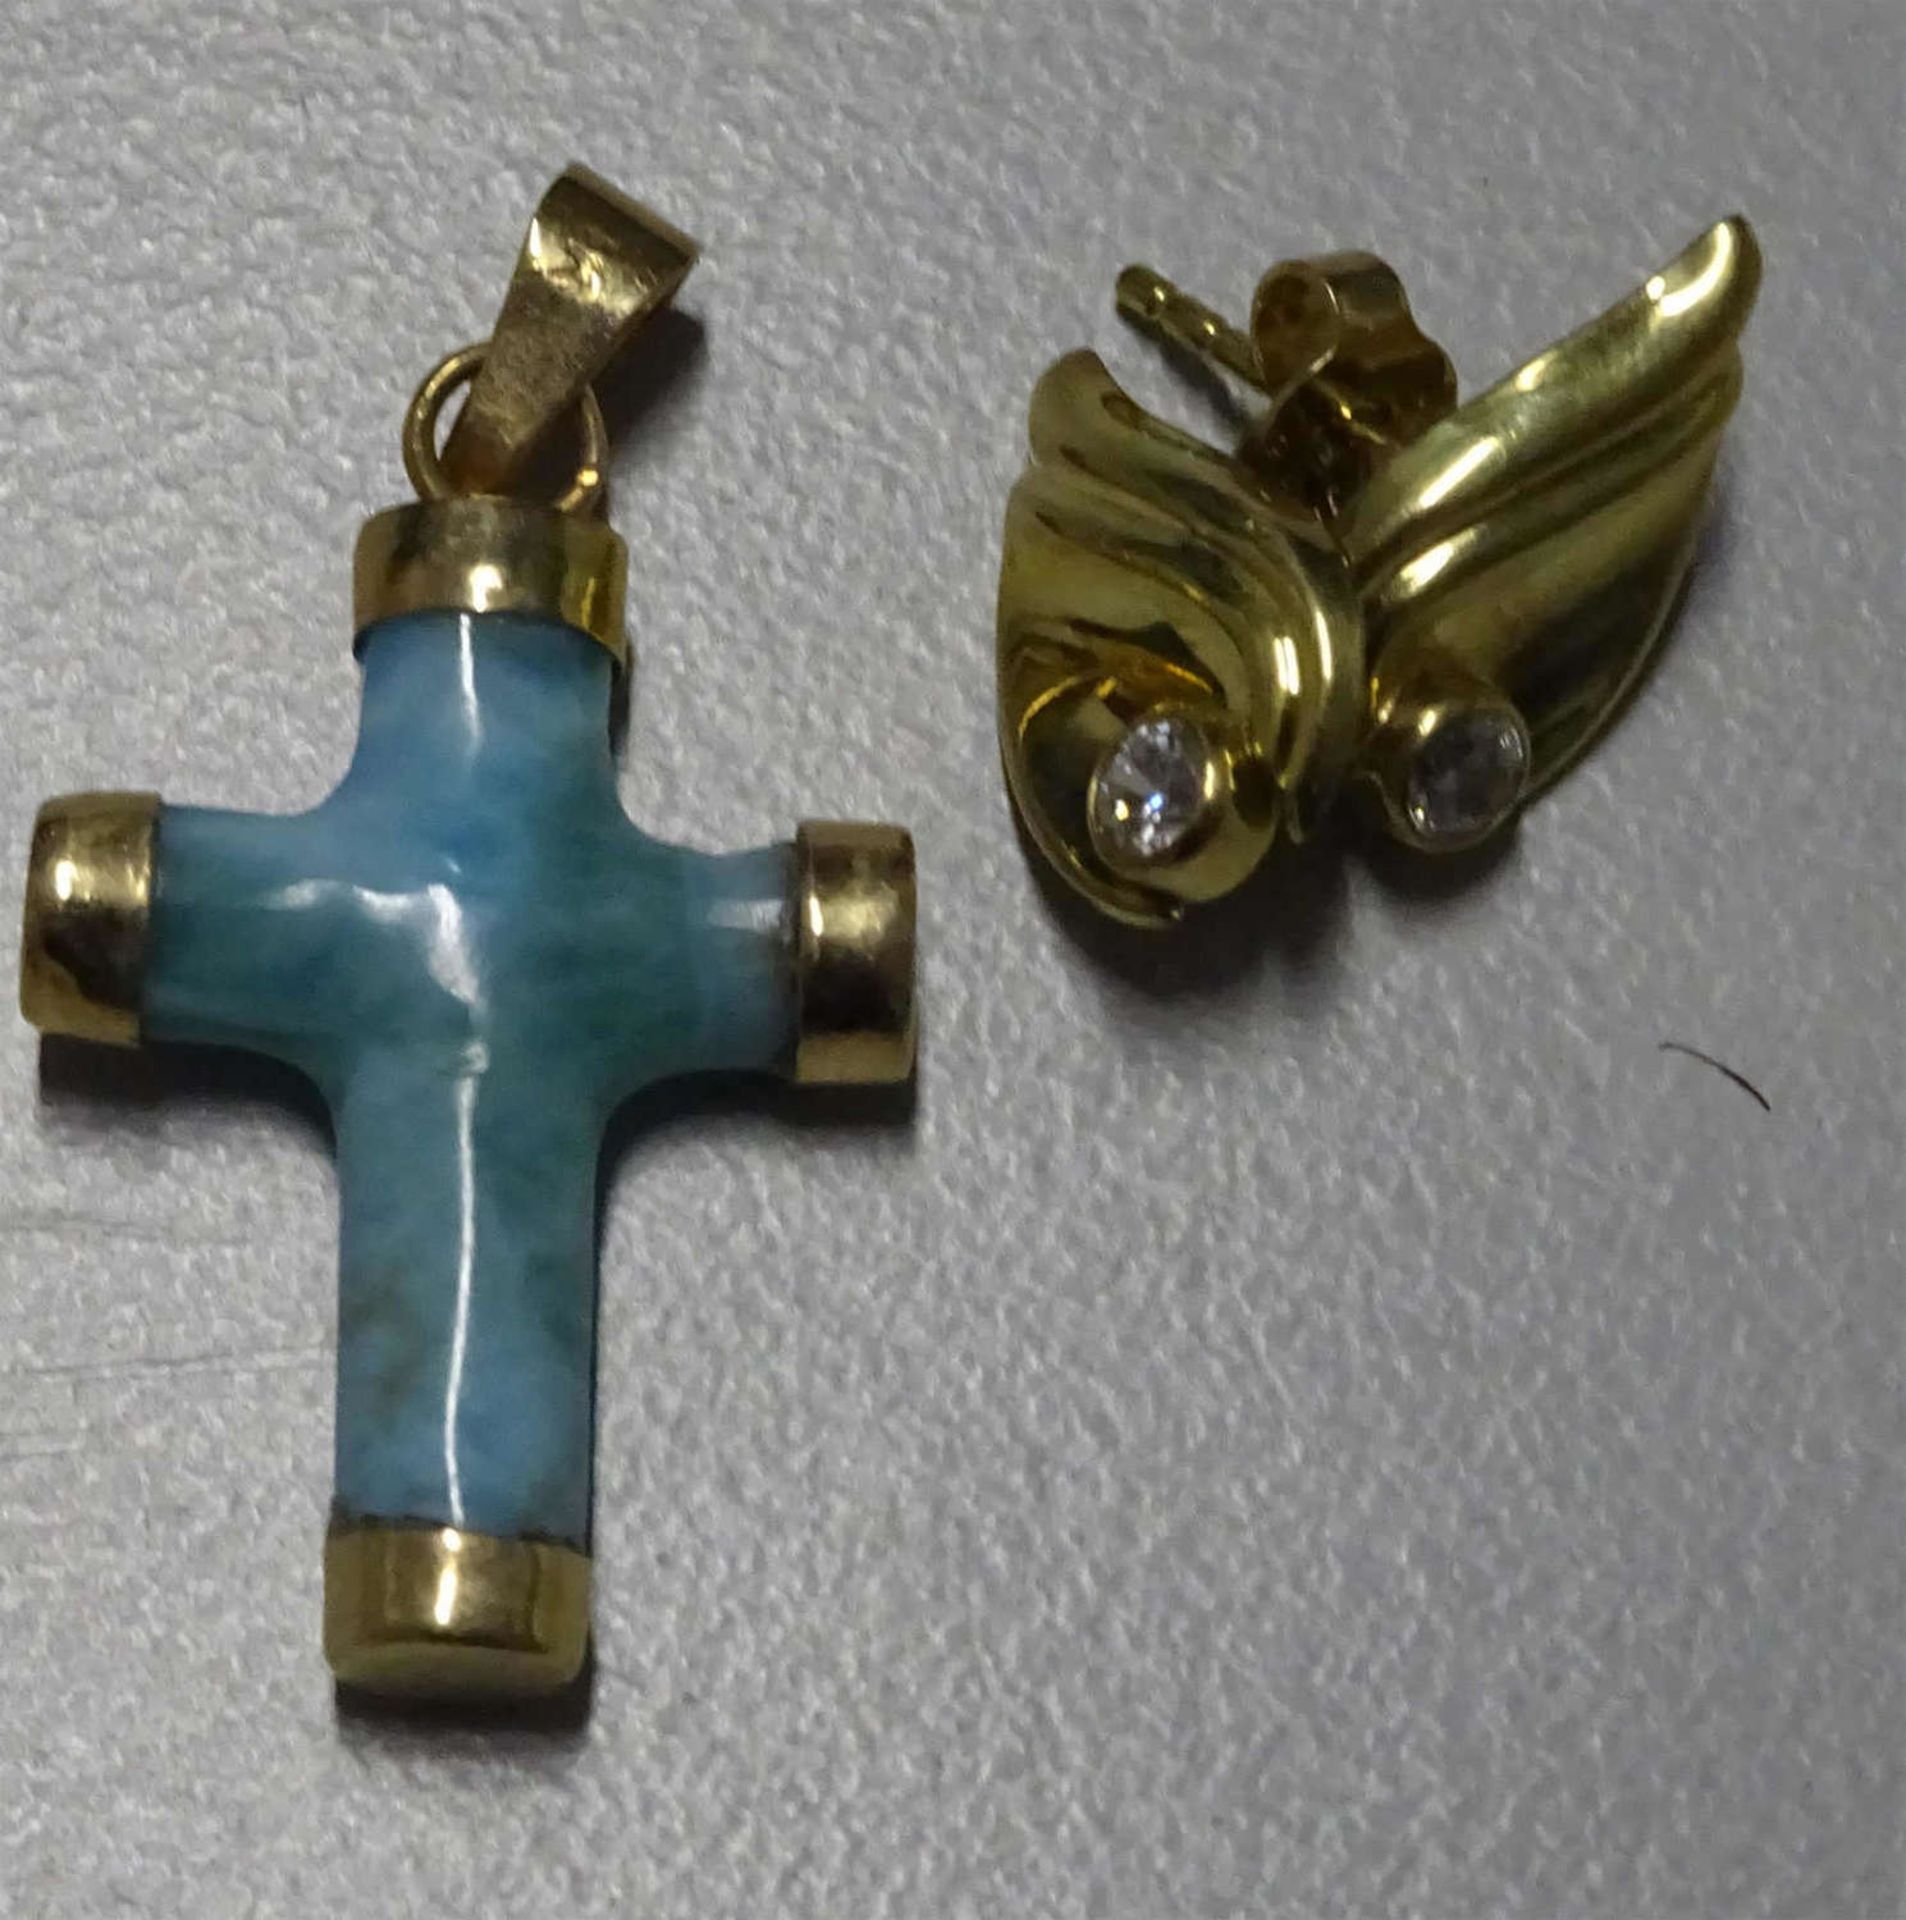 2 Teile Goldschmuck, 585er Gelbgold, 1x 1 Paar Ohrringe in Blattform, sowie 1 Anhänger "Kreuz" aus